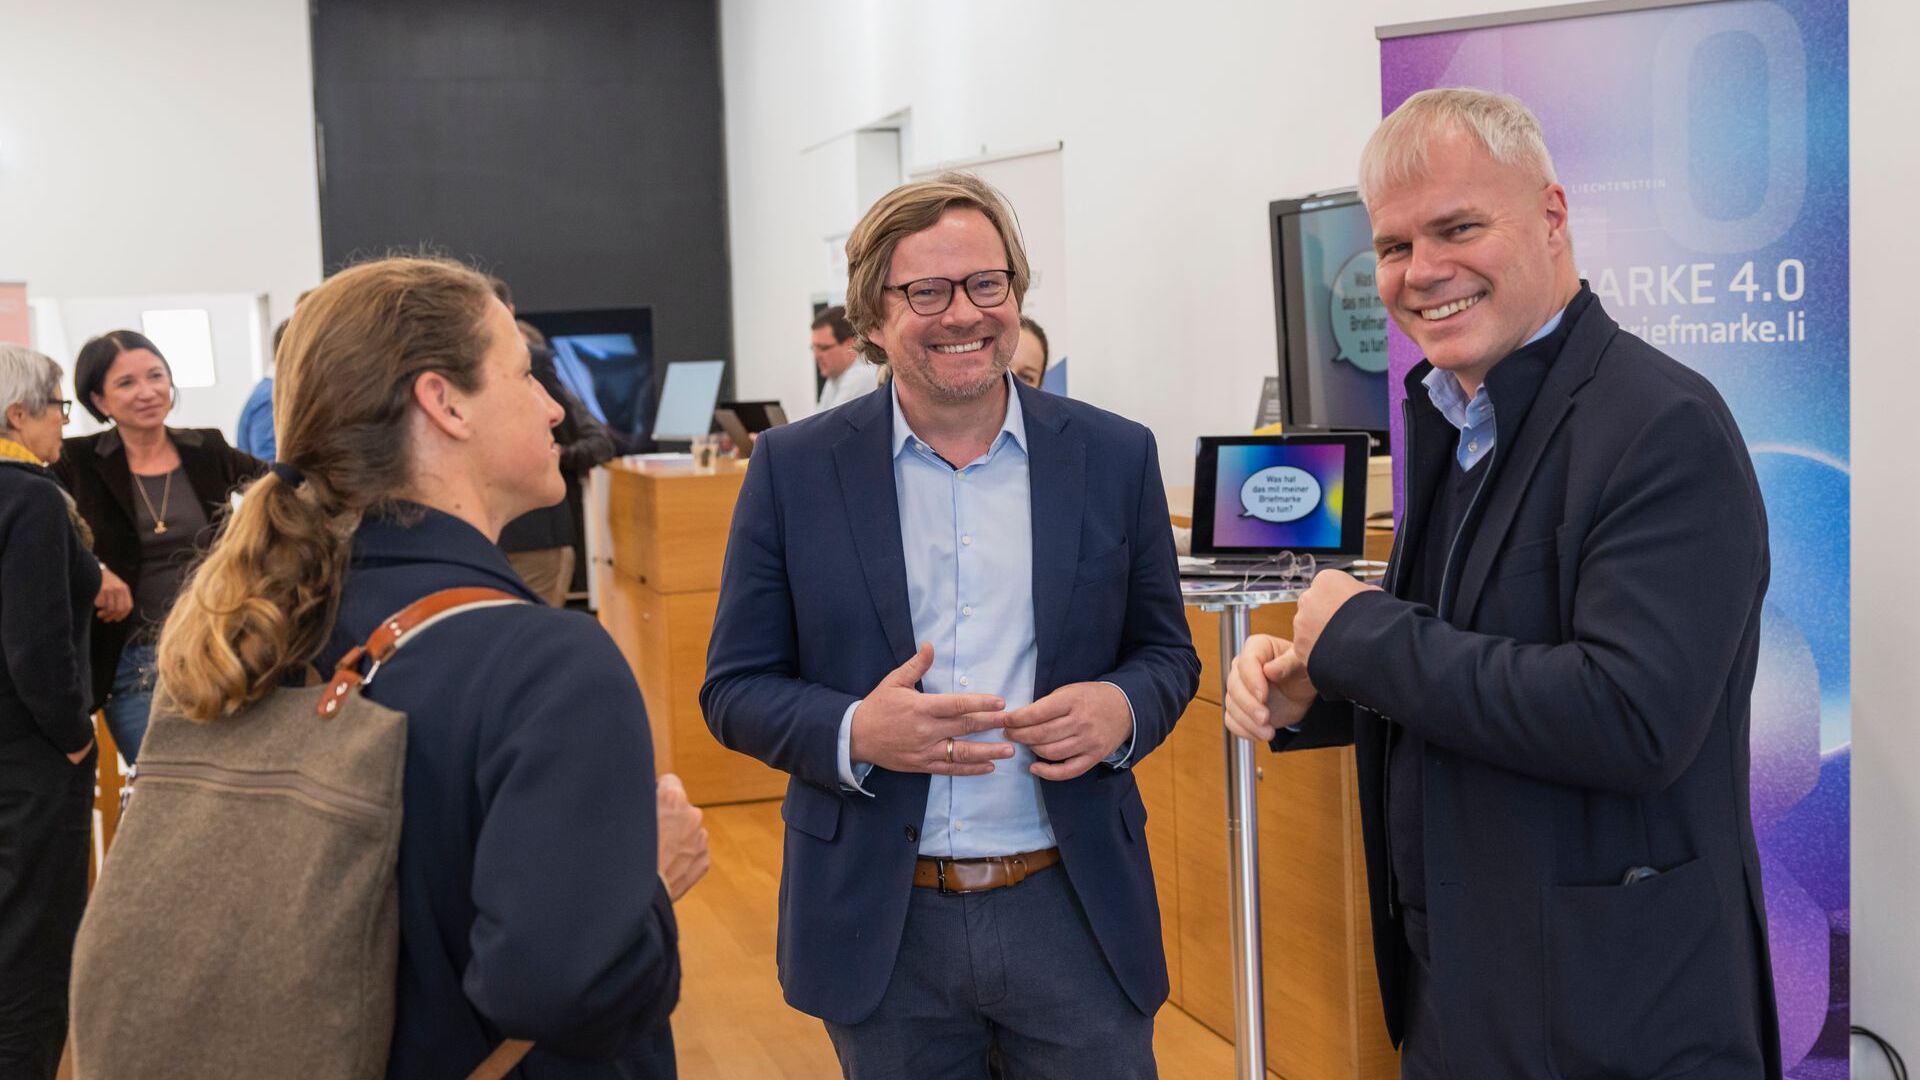 „Дигиталтаг Вадуз“, који је Музеј уметности главног града Кнежевине Лихтенштајн дочекао у суботу 6. новембра 2021, изазвао је ентузијазам јавности и говорника у аналогији са „Швајцарским дигиталним даном“ следећег 10.